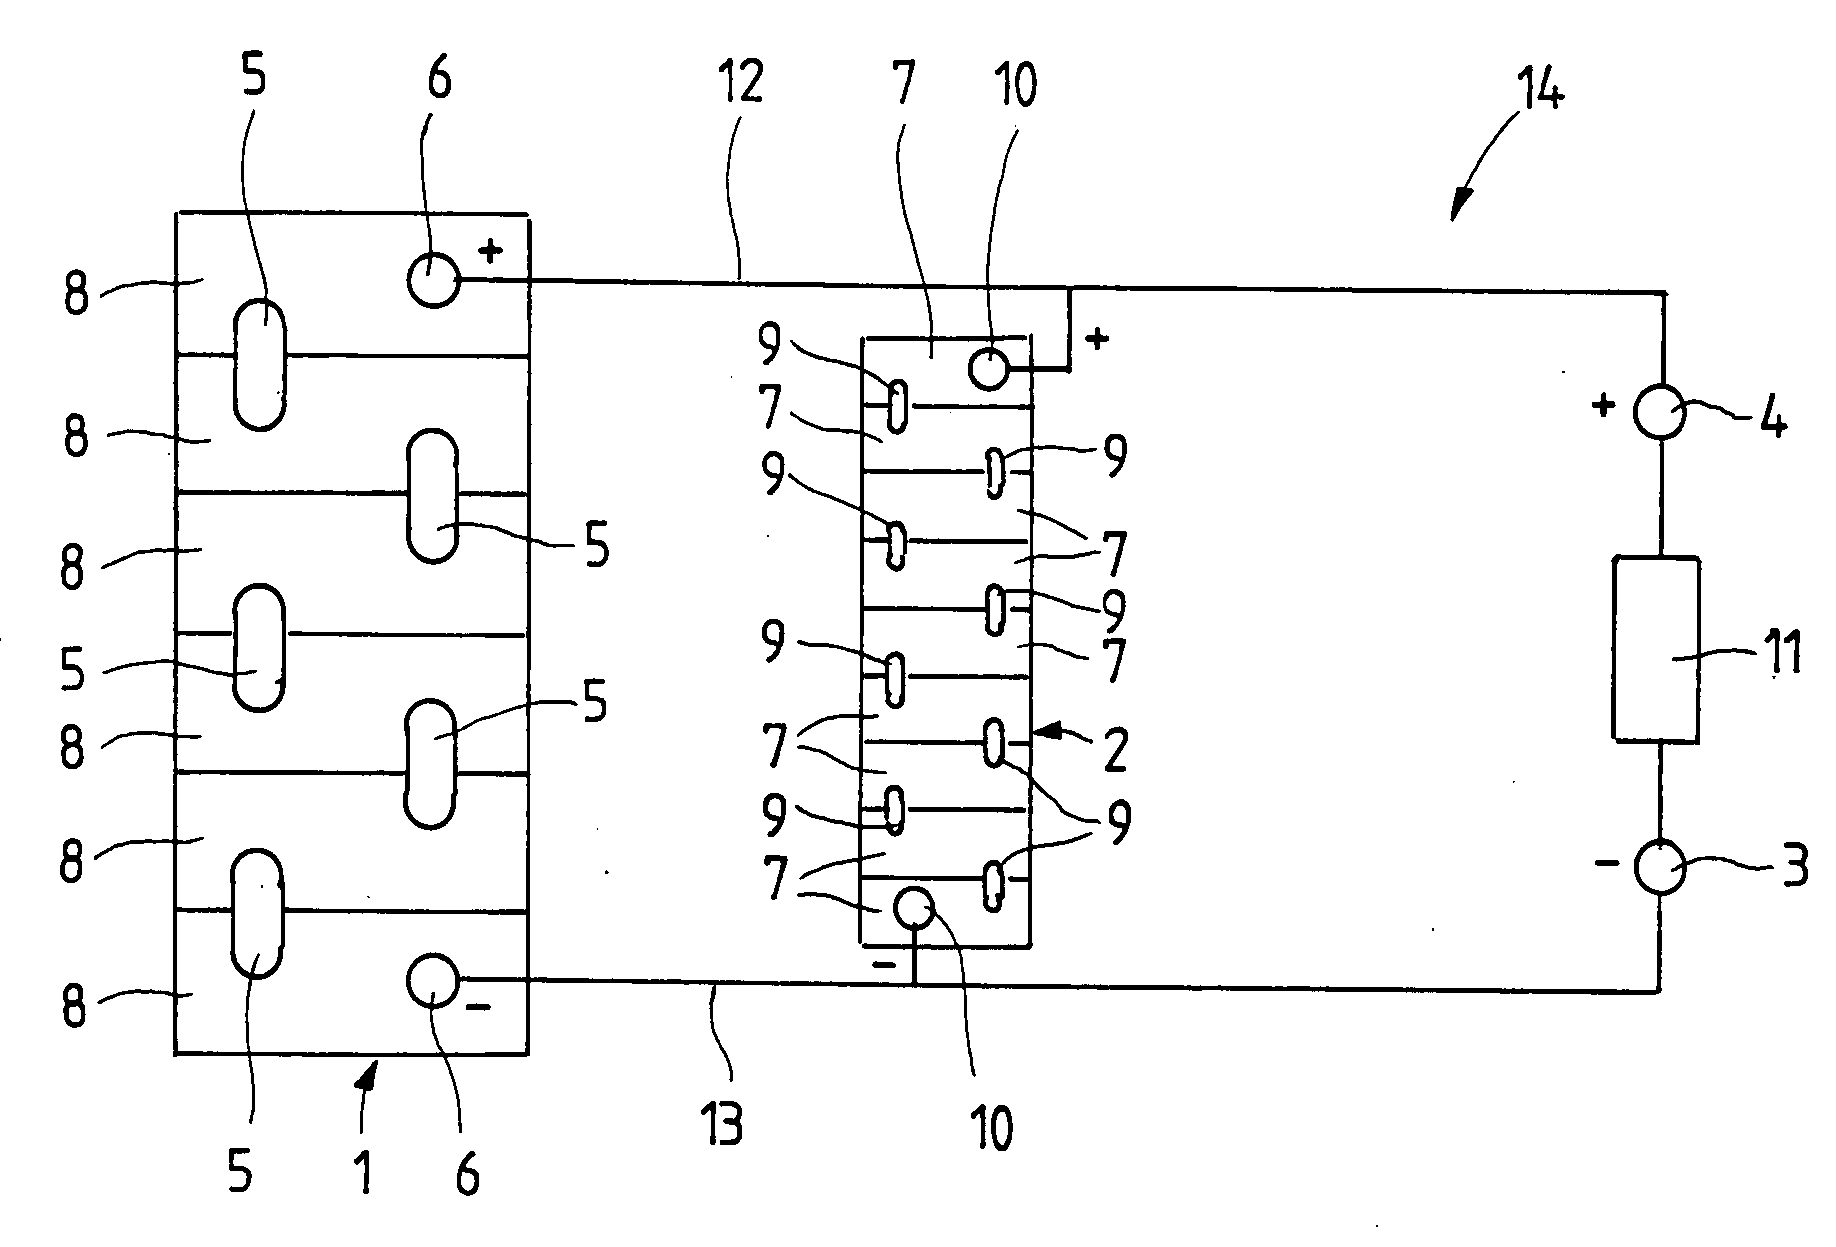 Accumulator arrangement